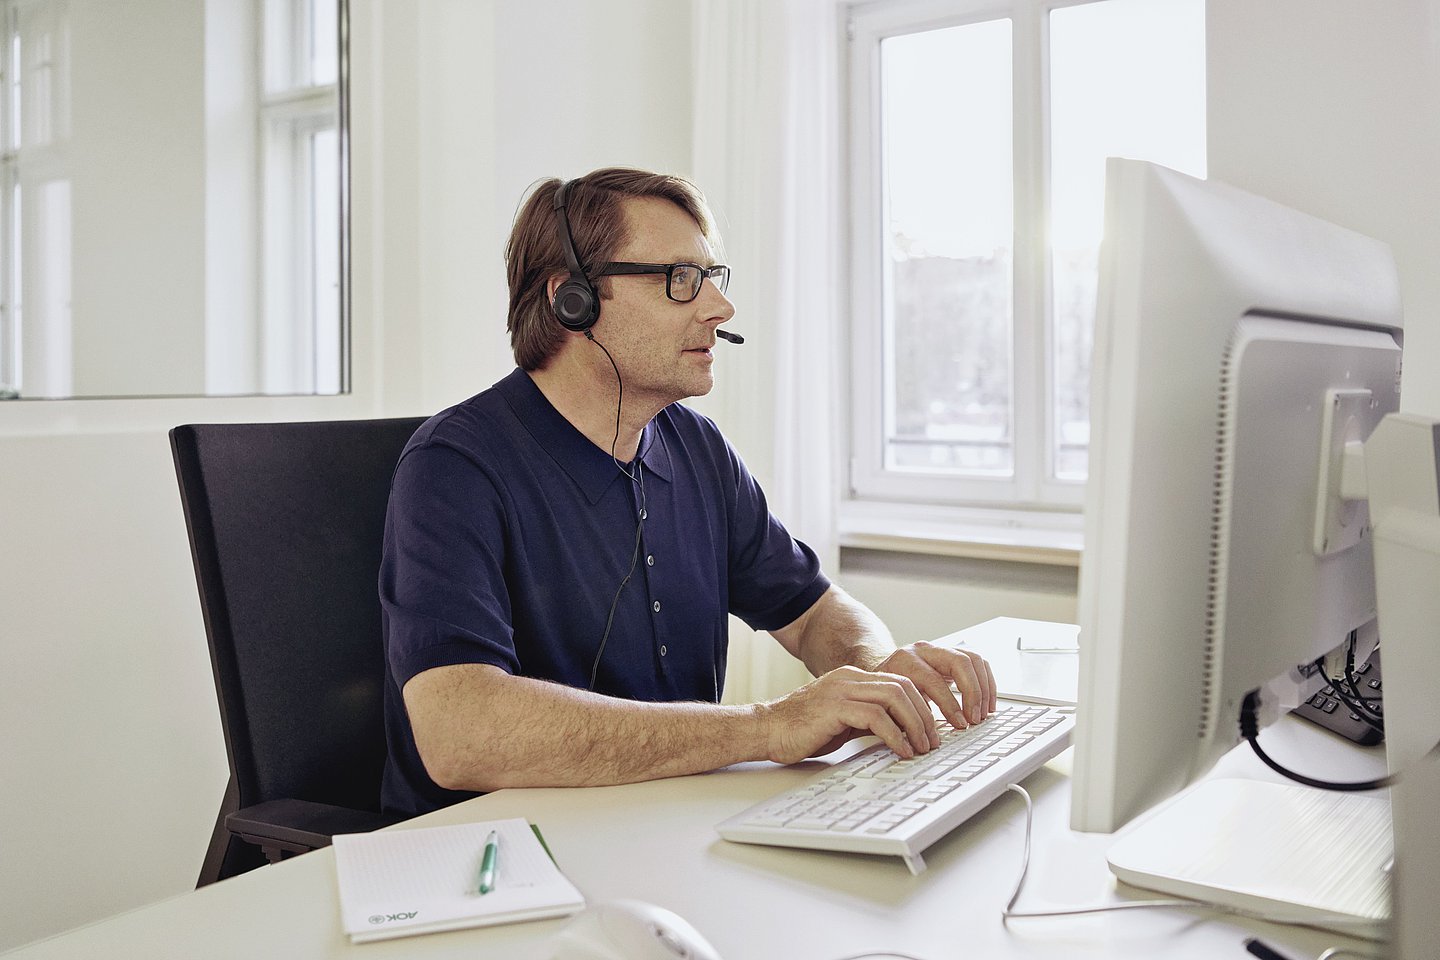 Foto: ein Mann sitzt mit einem Headset in einem Büro vor einem Bildschirm 